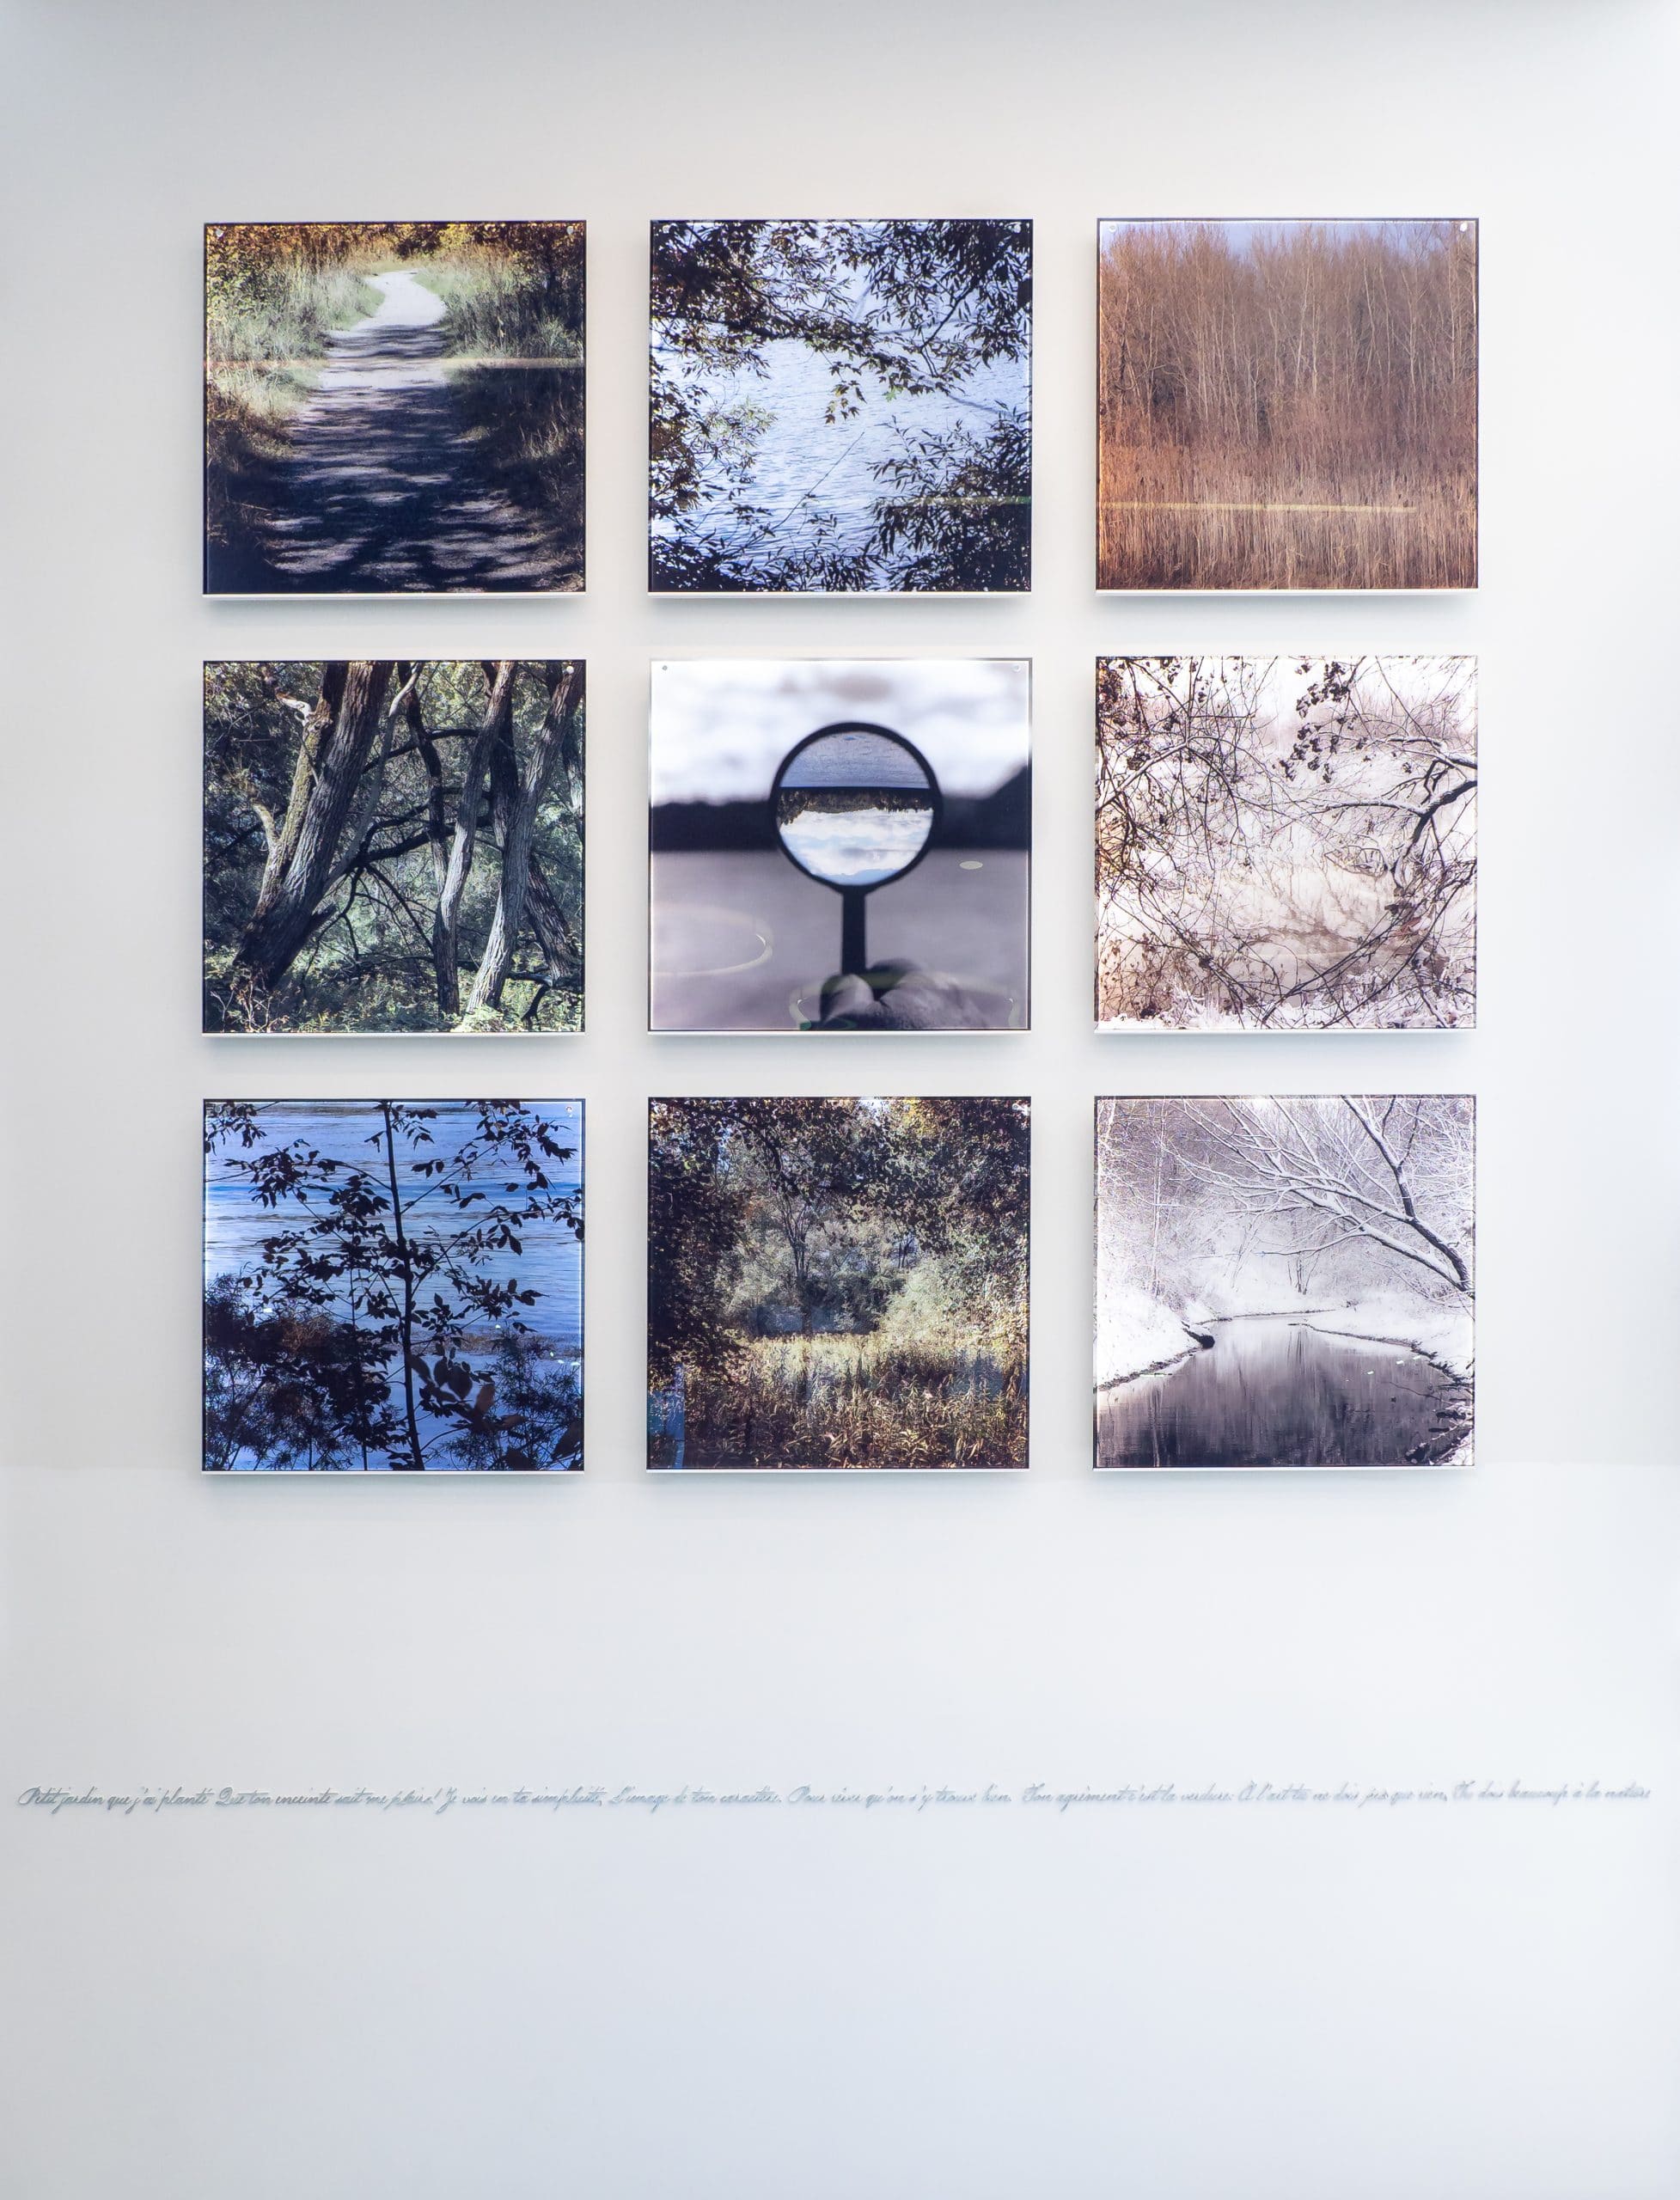 Catalogue d'art public - oeuvre de l'artiste Bertrand Carrière - La lumière des lieux - 9 tableaux représentant des lieux selon les saisons